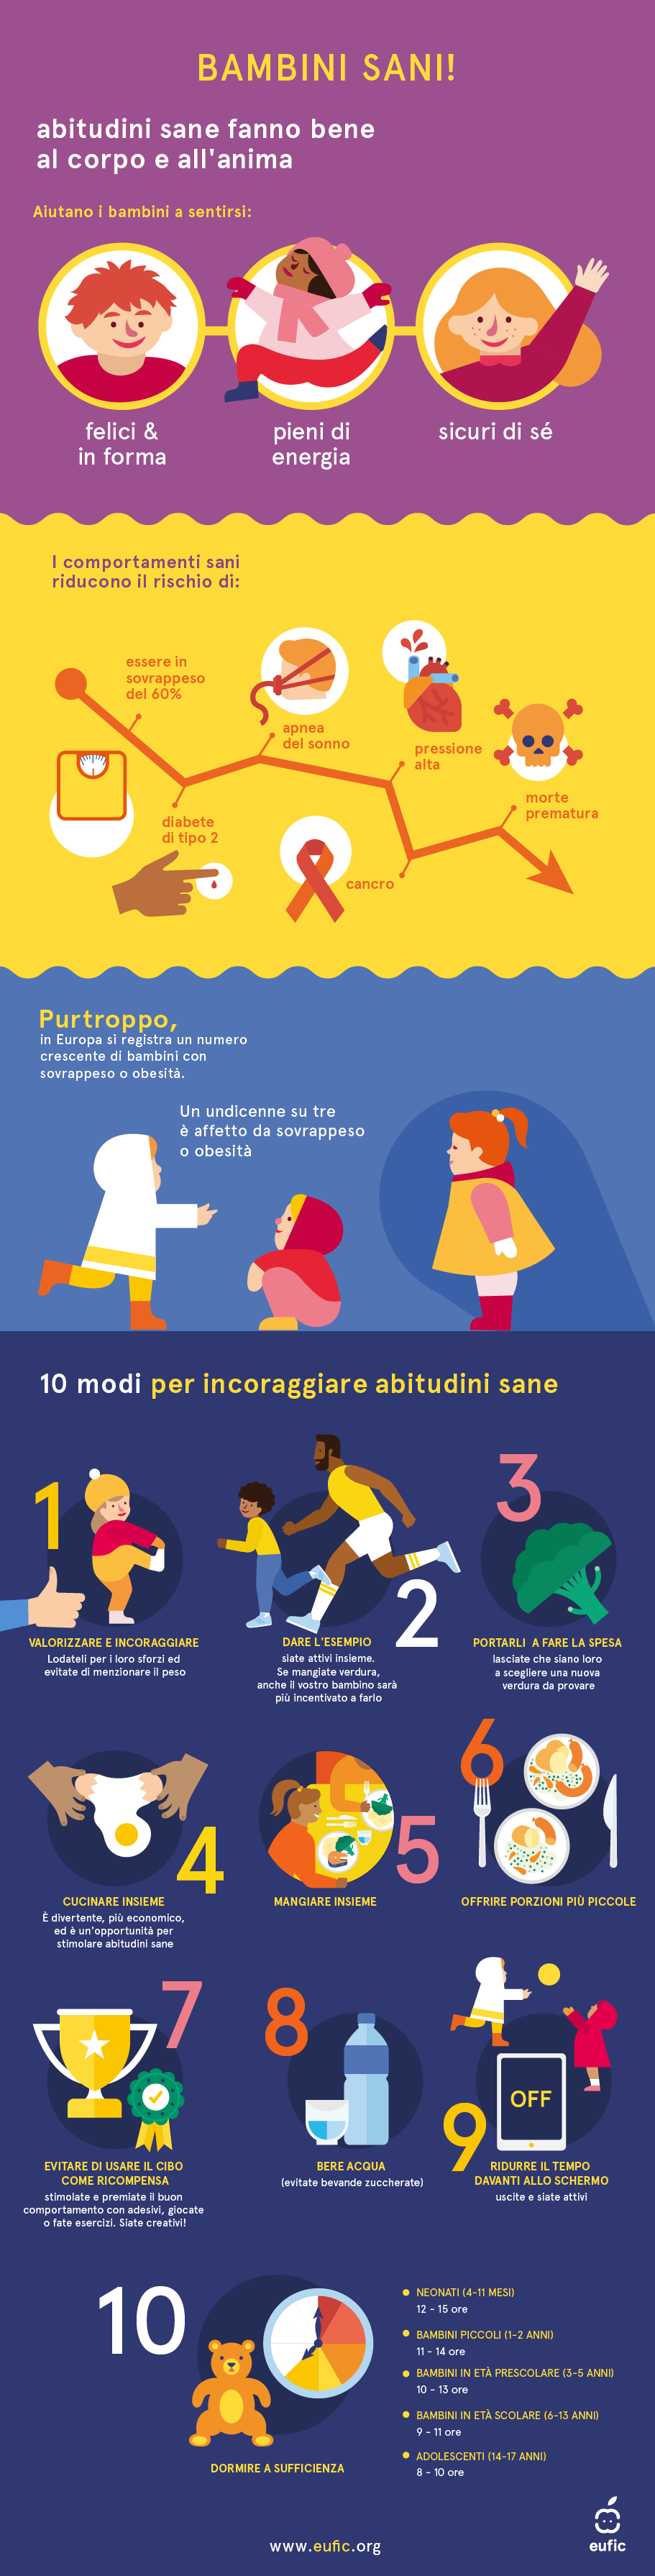 Infografica sull'obesità infantile con 10 consigli fondati su basi scientifiche per incoraggiare abitudini sane nei bambini